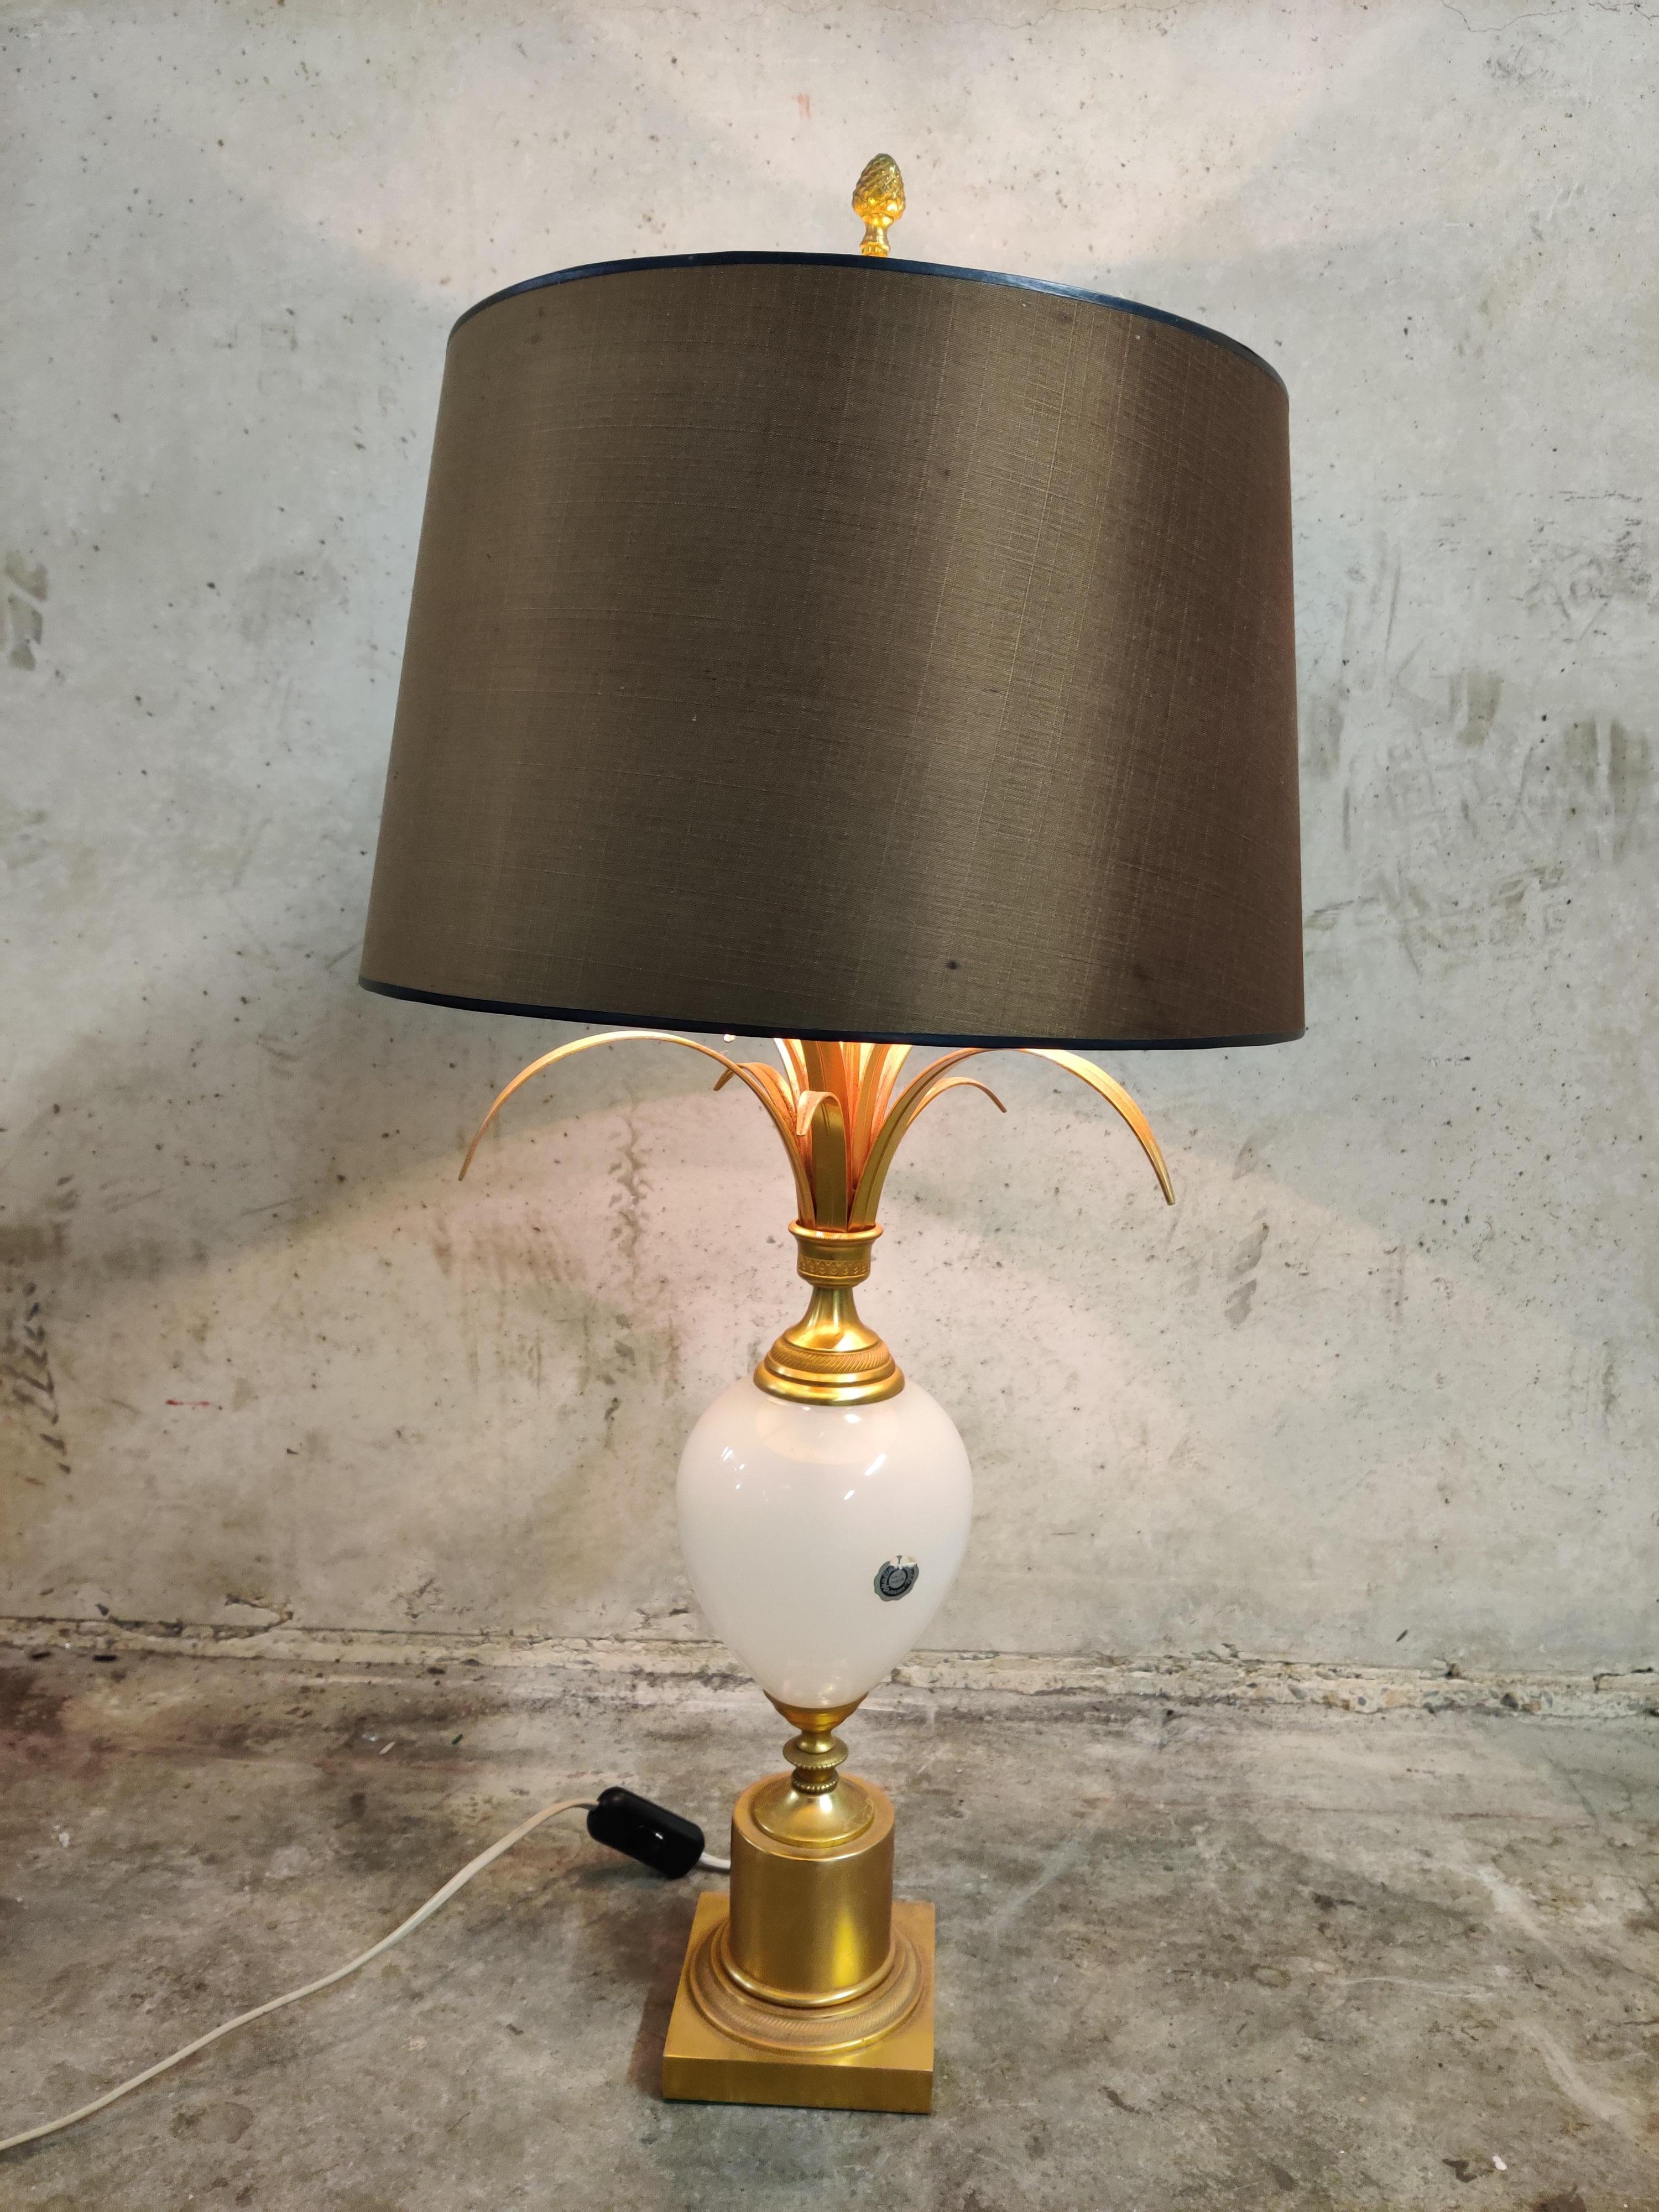 Lampe de table à feuilles d'ananas par Boulanger attribuée à la Maison Charles, modèle rare avec un globe opalin.

Cette lampe de style Régence, également connue sous le nom de 